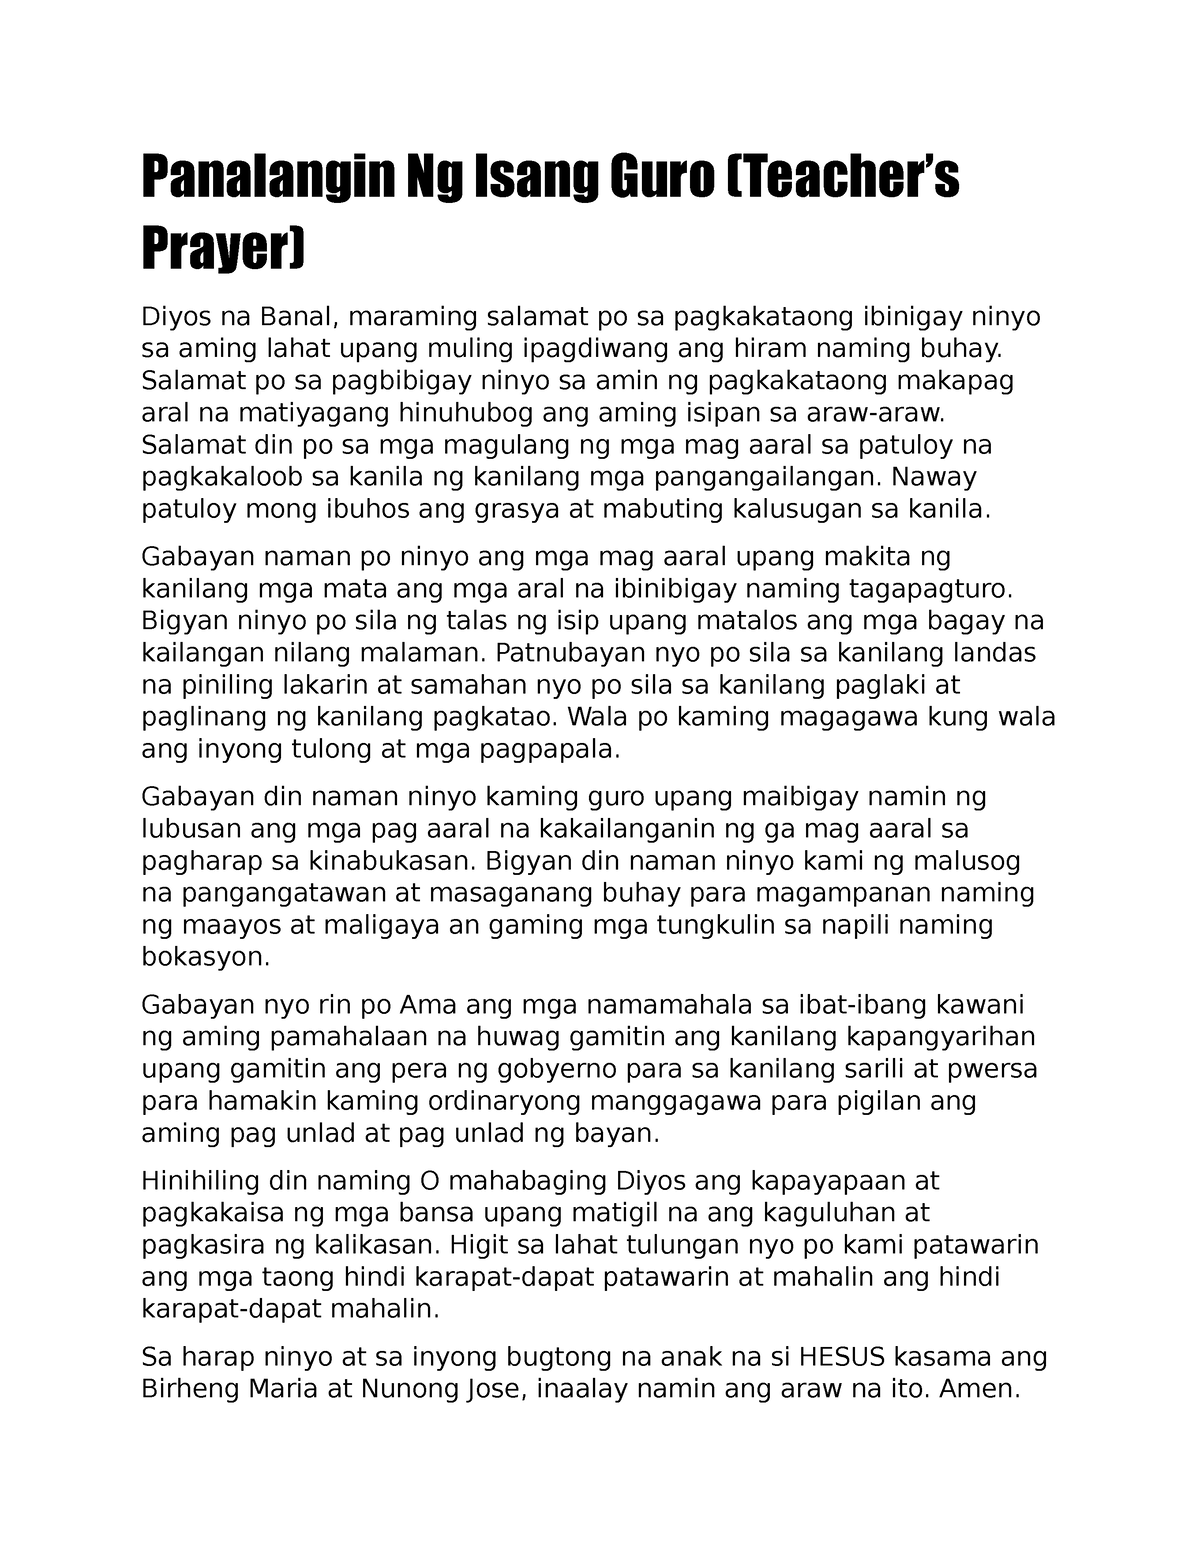 Prayer - Panalangin Ng Isang Guro (Teacher’s Prayer) Diyos na Banal